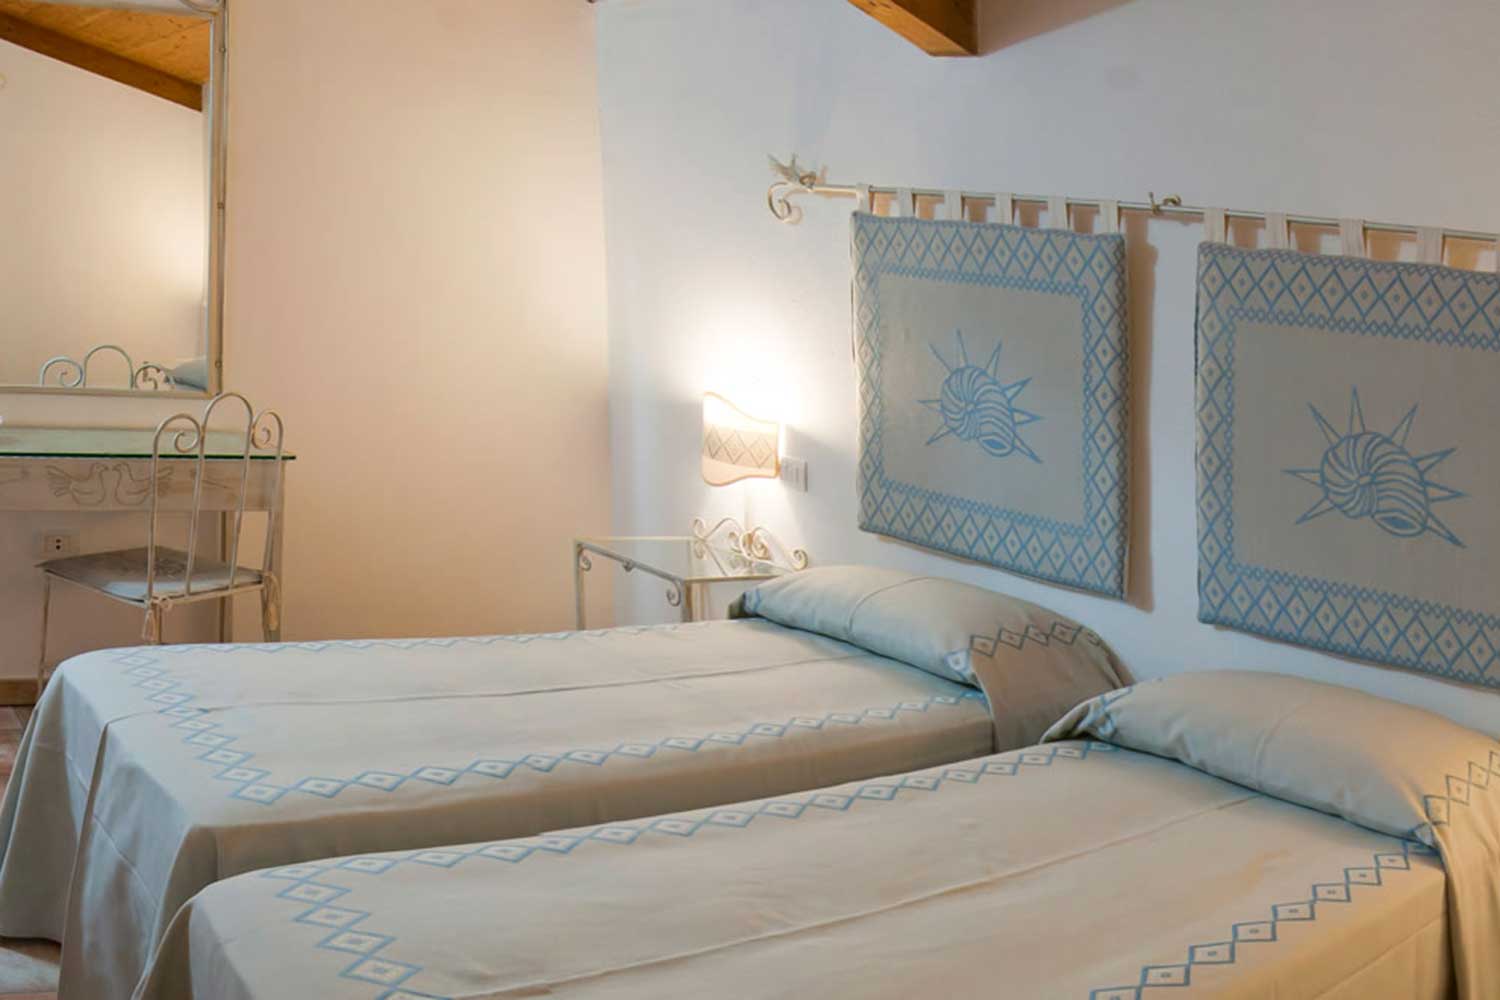 La camera doppia del Club Marina Rey in Sardegna, con l'arredamento in stile tipico sardo.